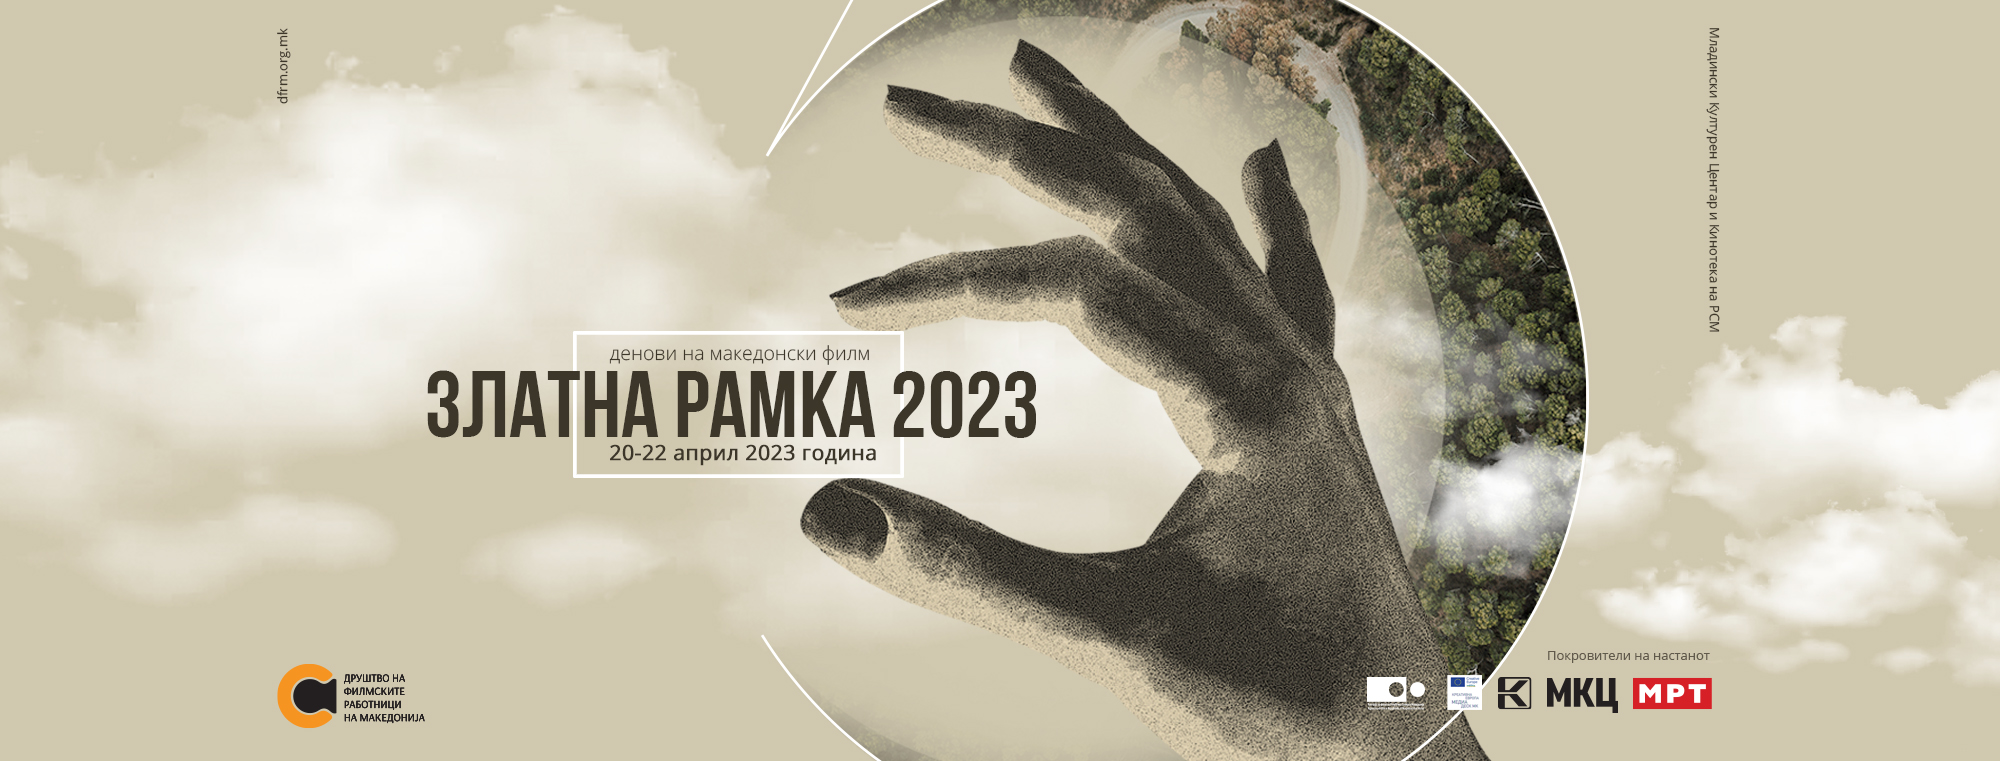 Денови на македонски филм “Златна рамка 2023”